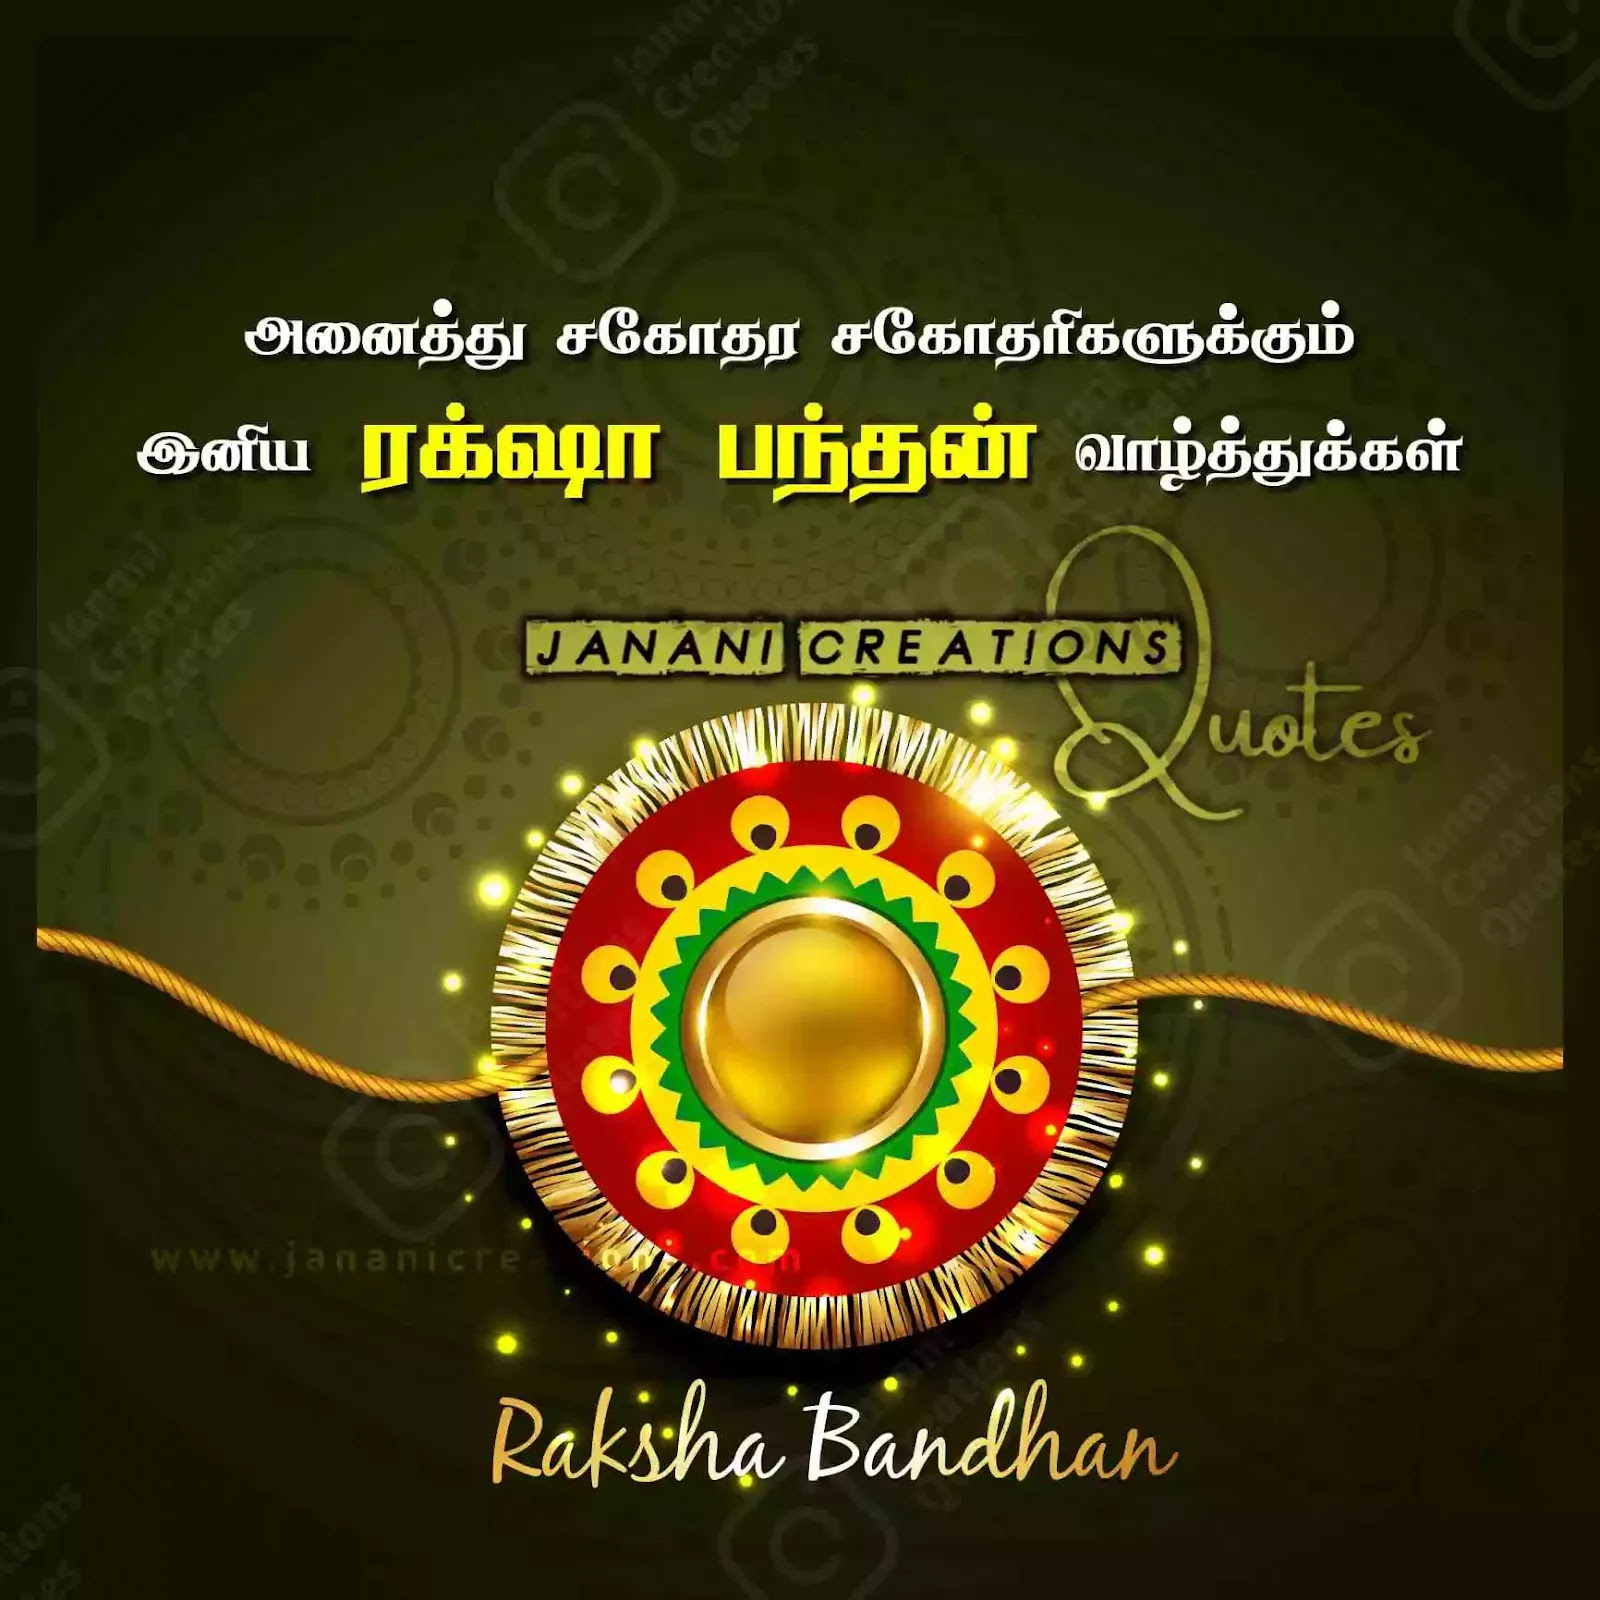 ரக்ஷா பந்தன் வாழ்த்துக்கள் - Raksha Bandhan Quotes in Tamil